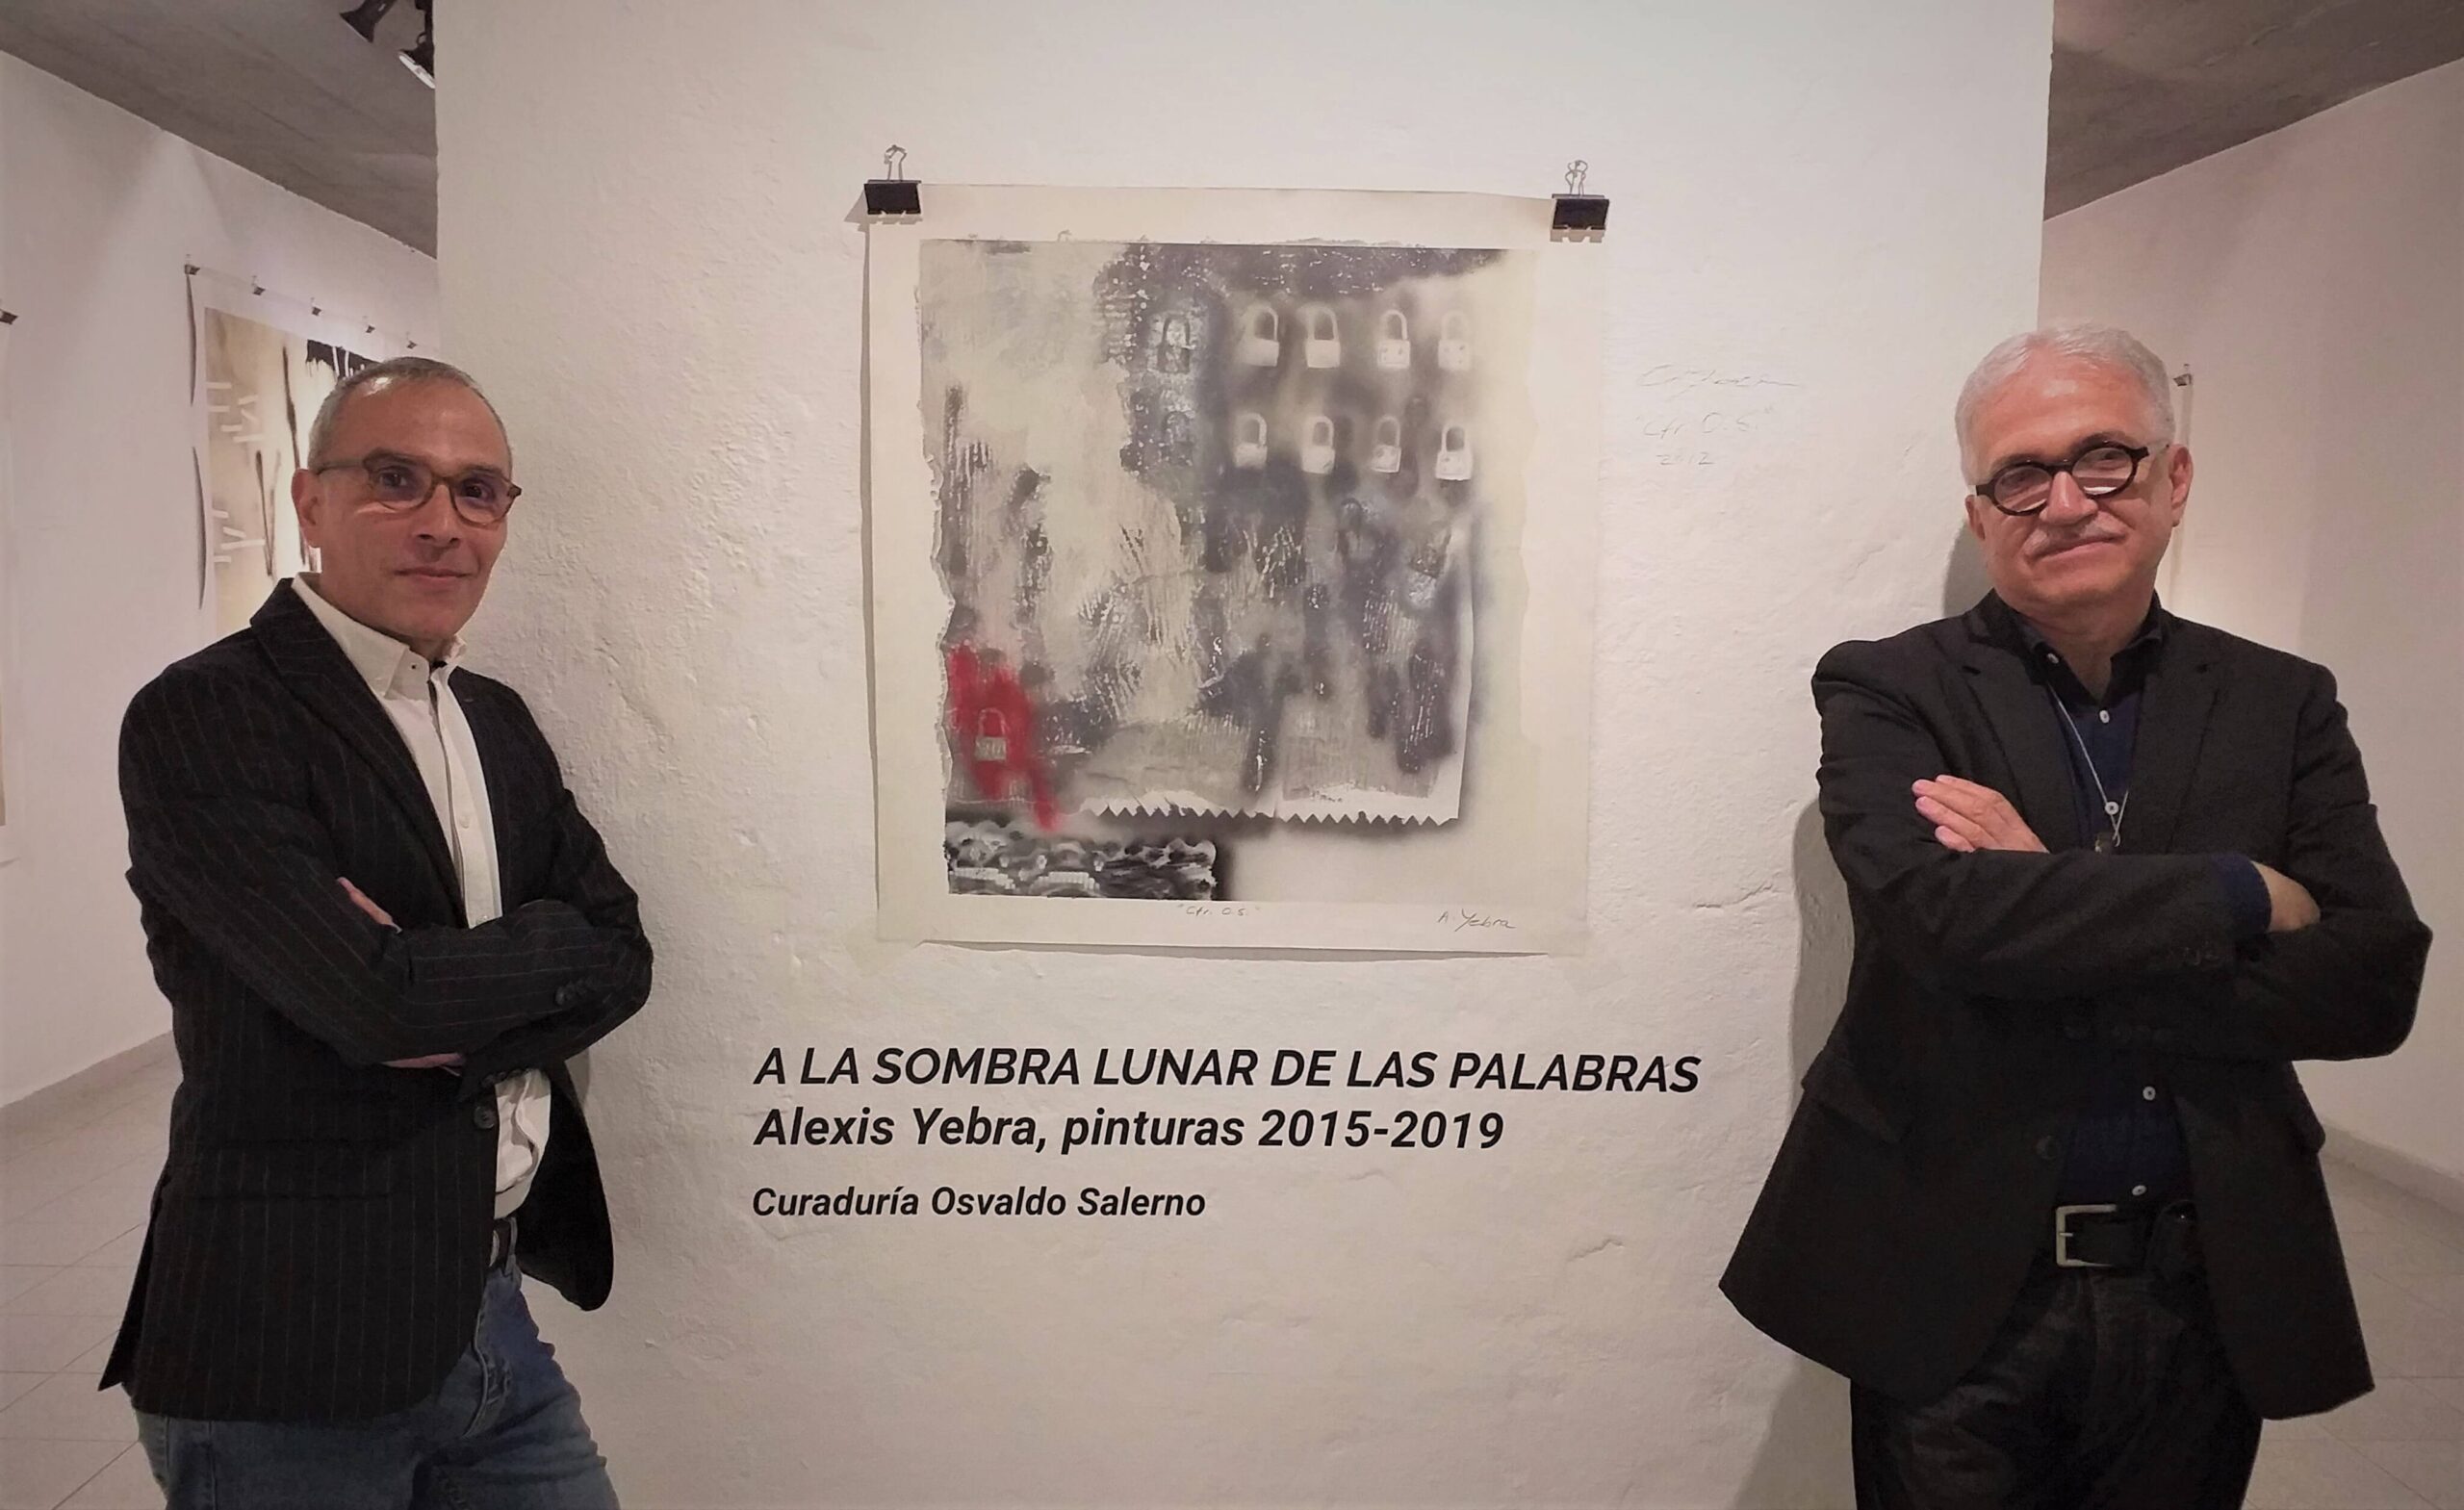 Osvaldo Salerno, curador de la muestra, y Alexis Yebra